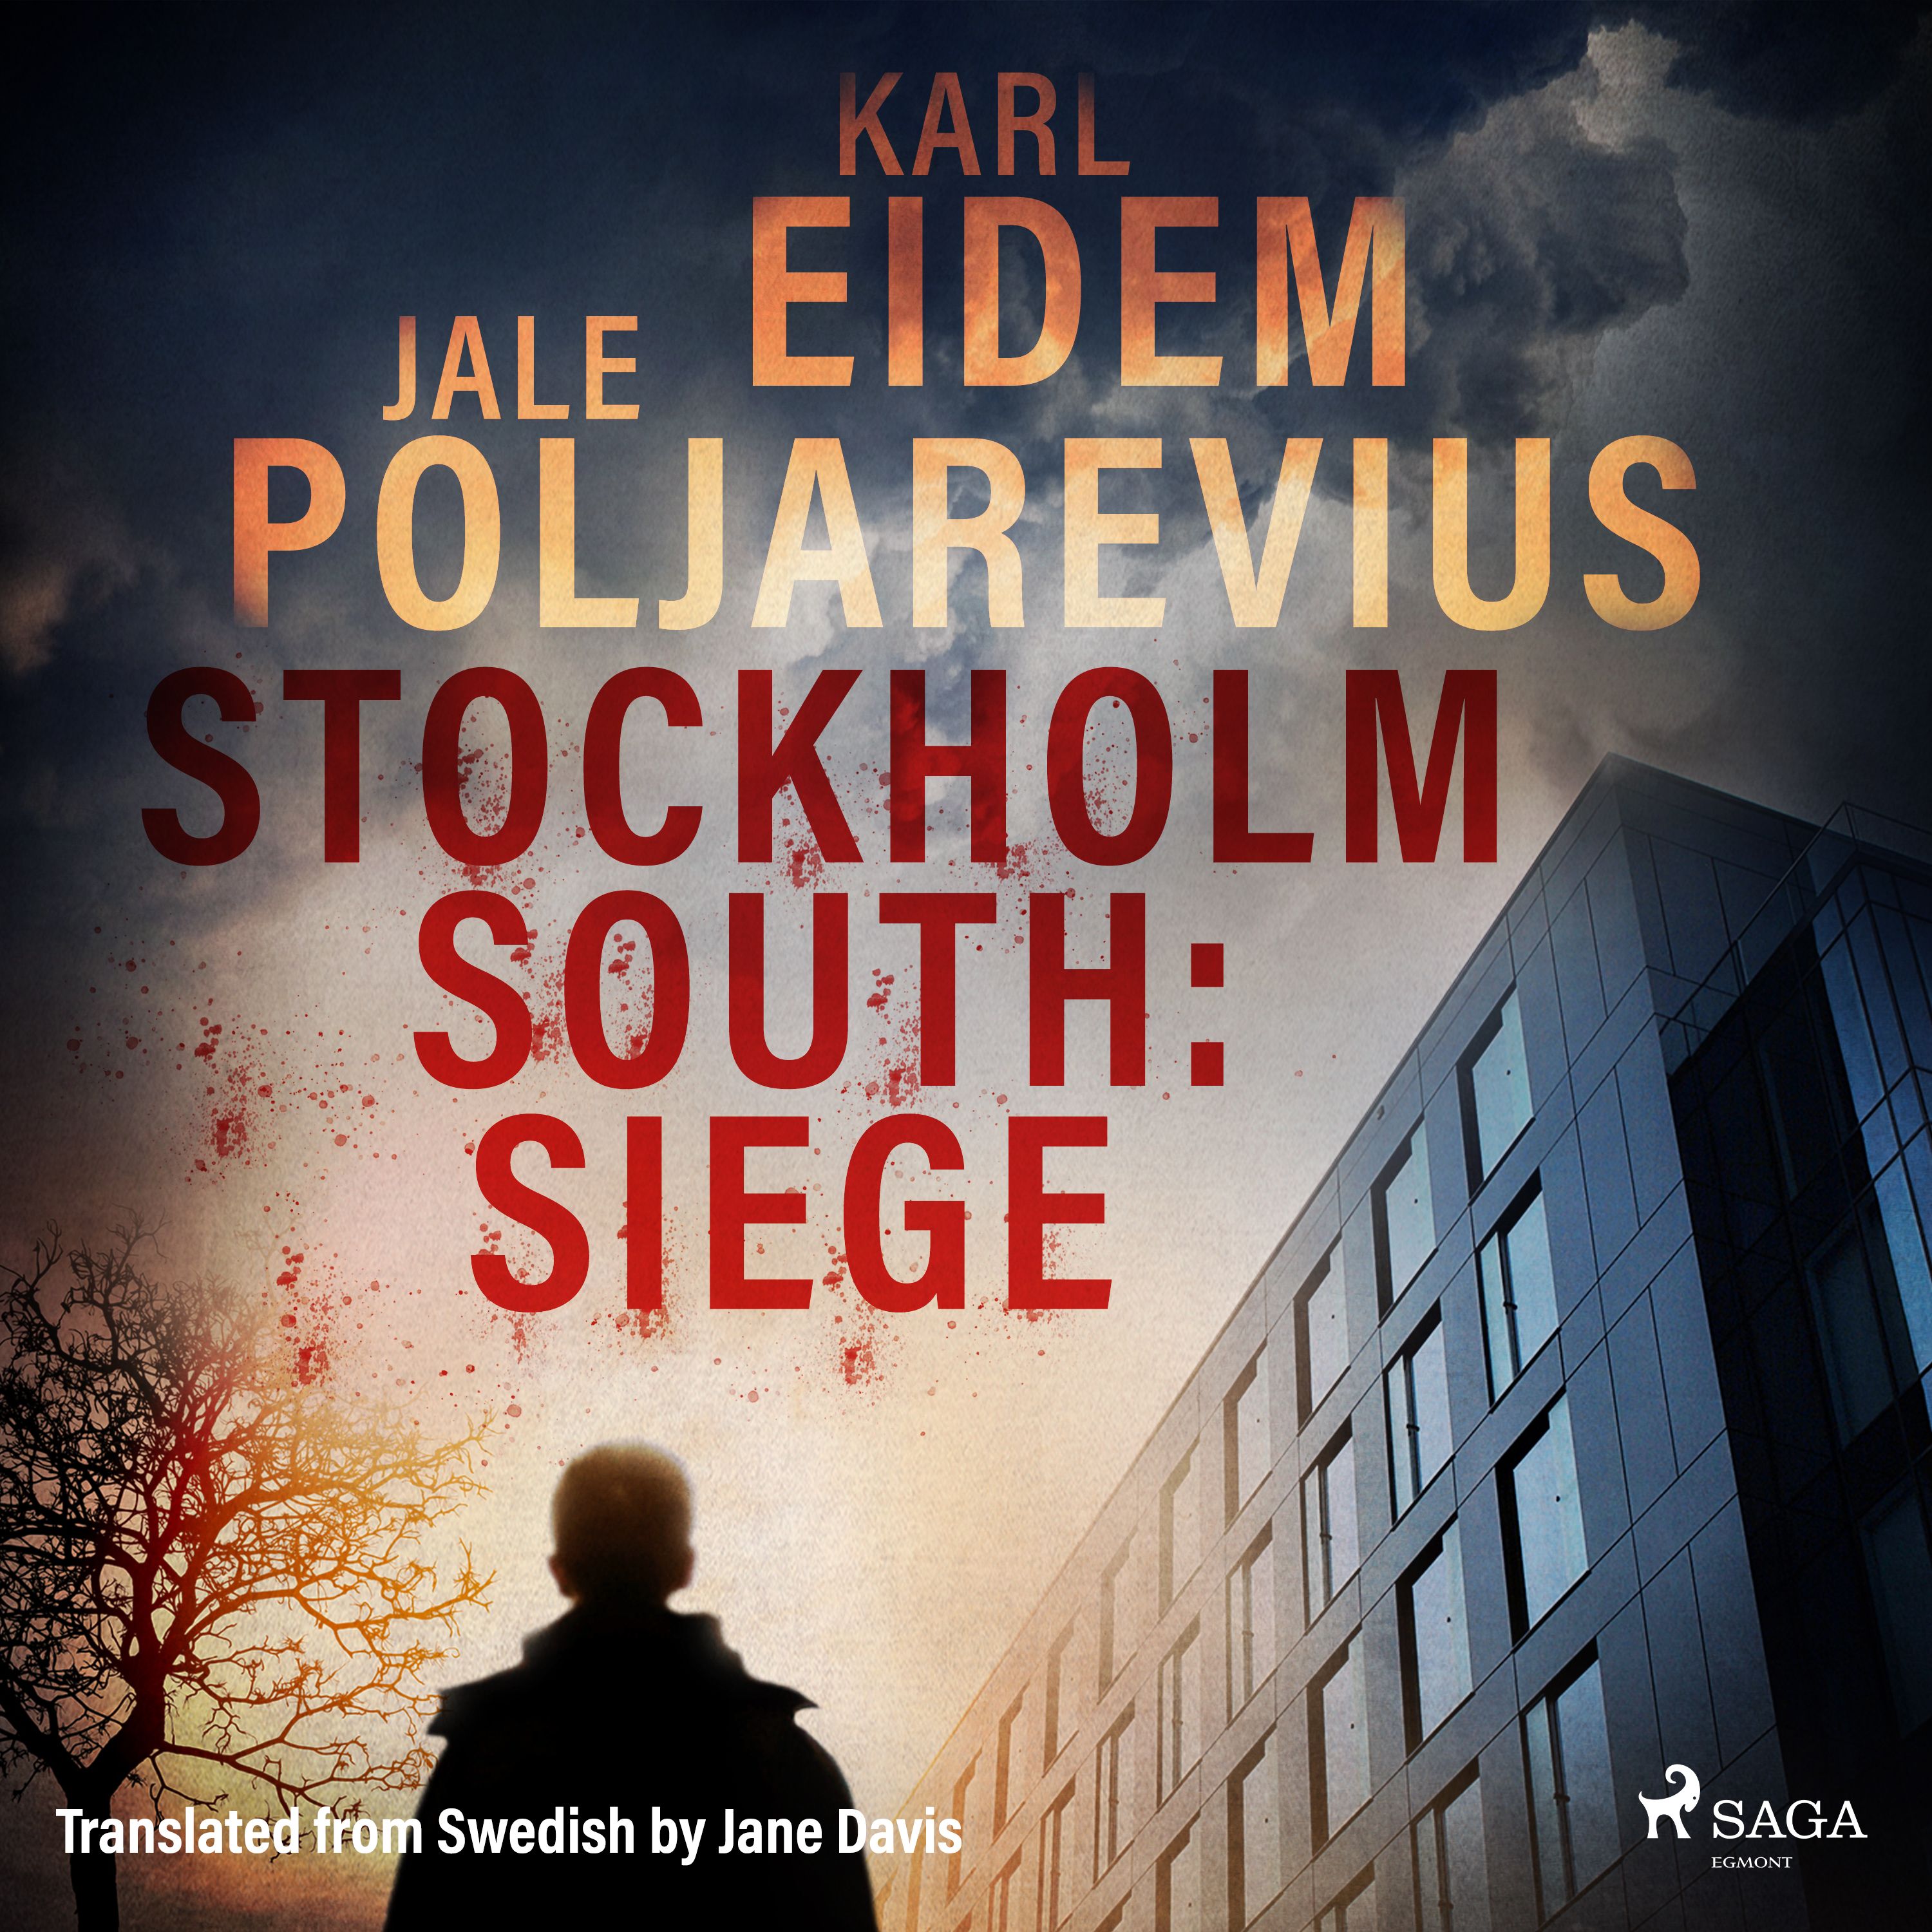 Stockholm South: Siege, lydbog af Karl Eidem, Jale Poljarevius